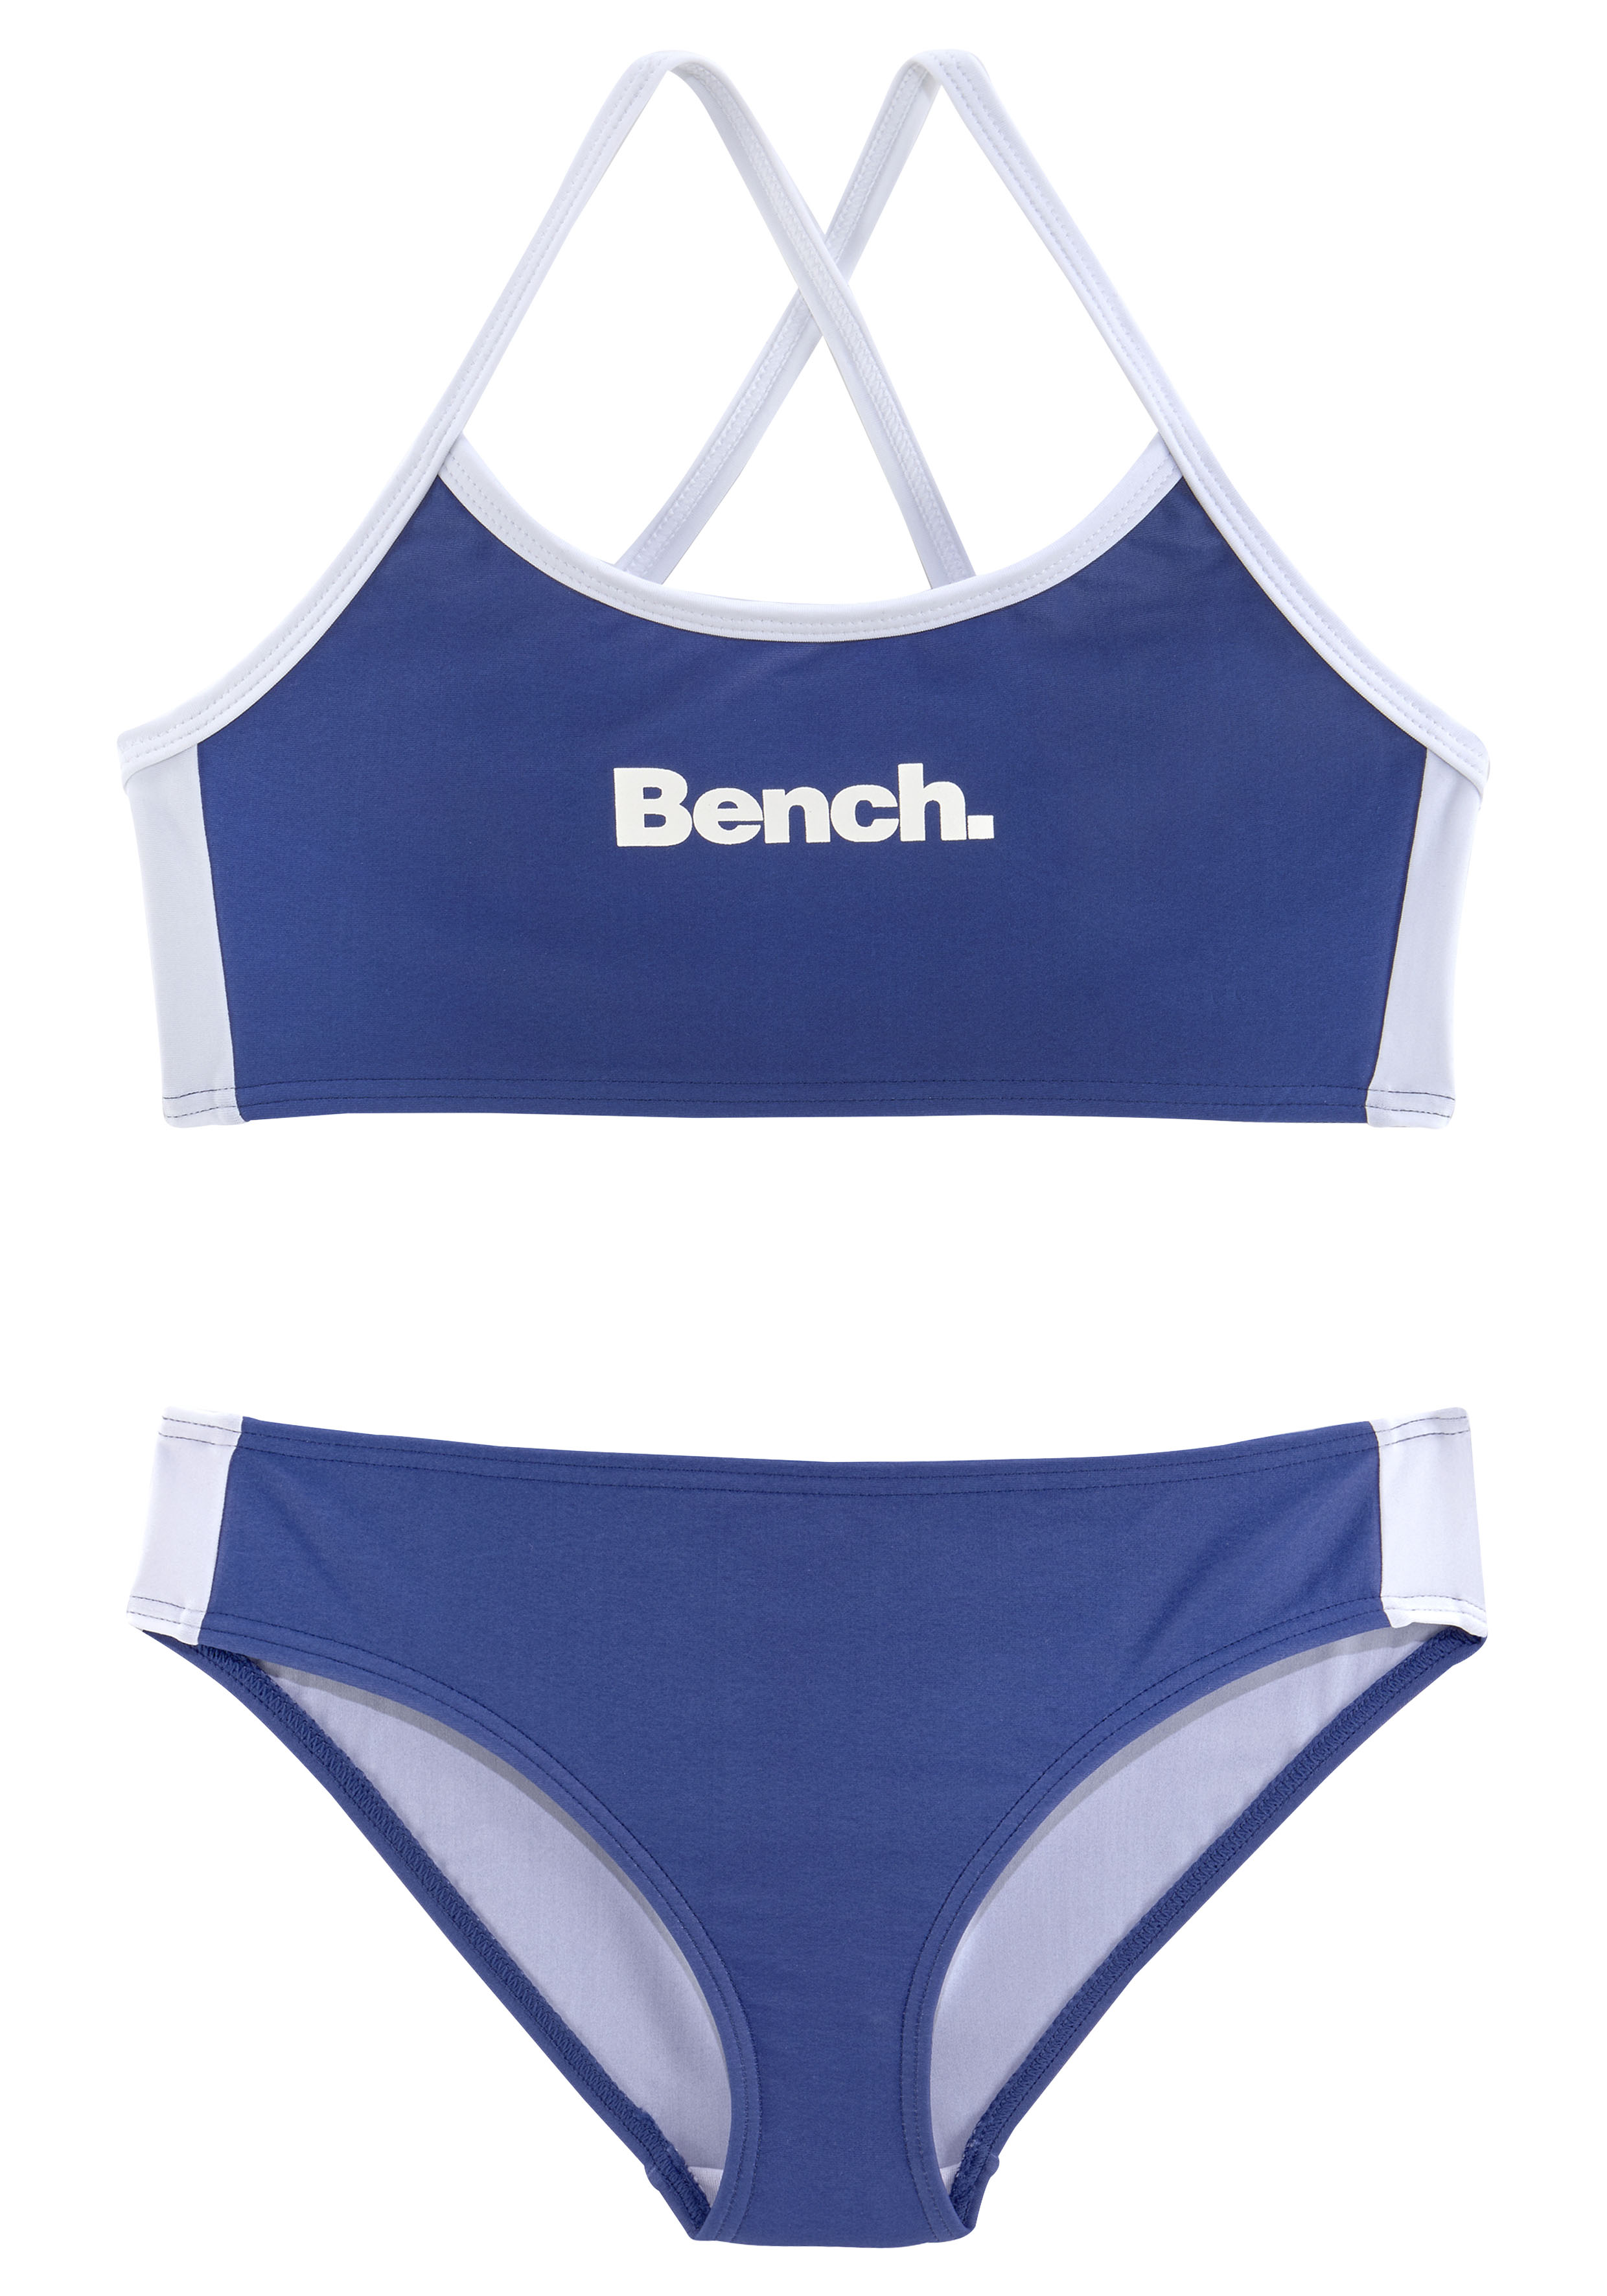 Modische Bench. Bustier-Bikini, mit Kontrastdetails ohne Mindestbestellwert bestellen - versandkostenfrei